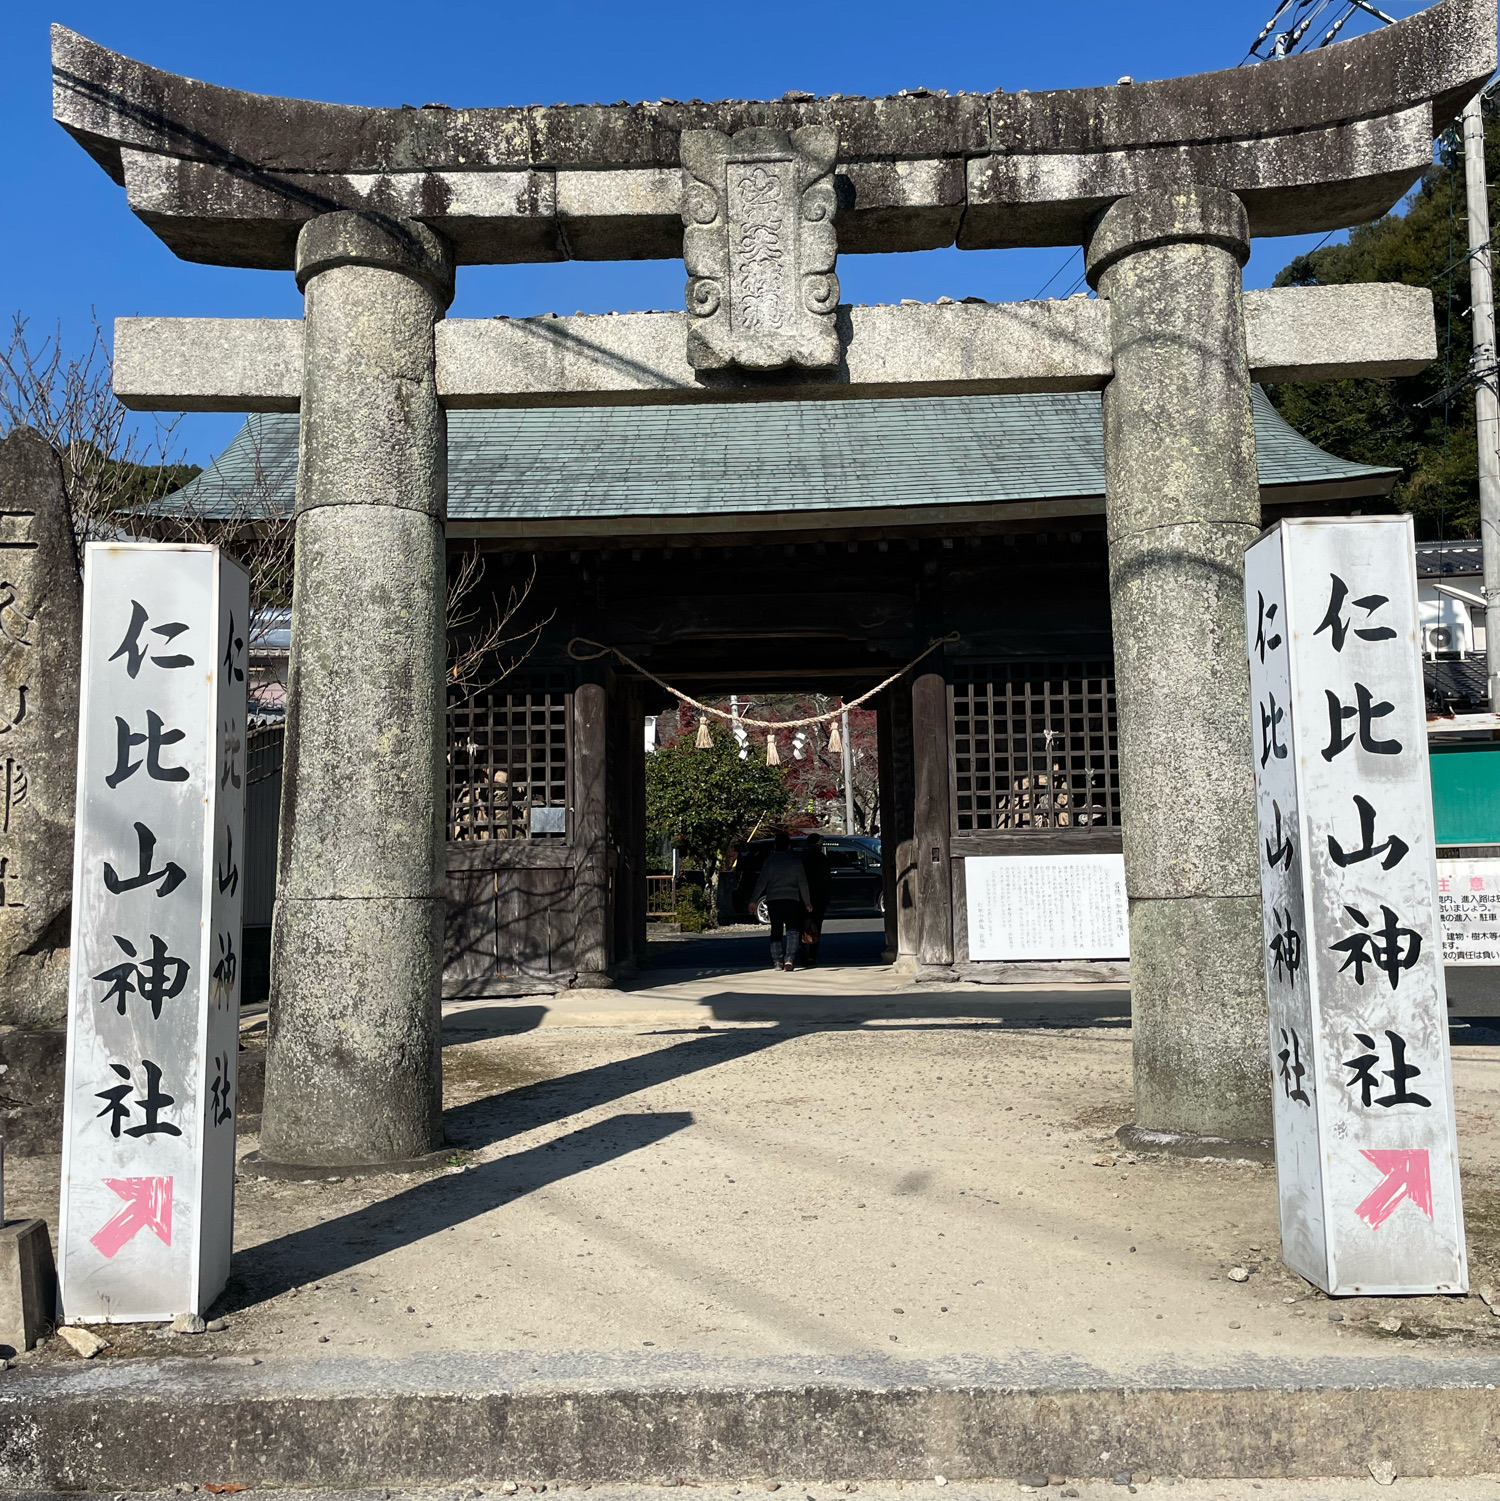 「佐贺仁比川神社」秋季赏枫,附近有九年庵和水车见游园